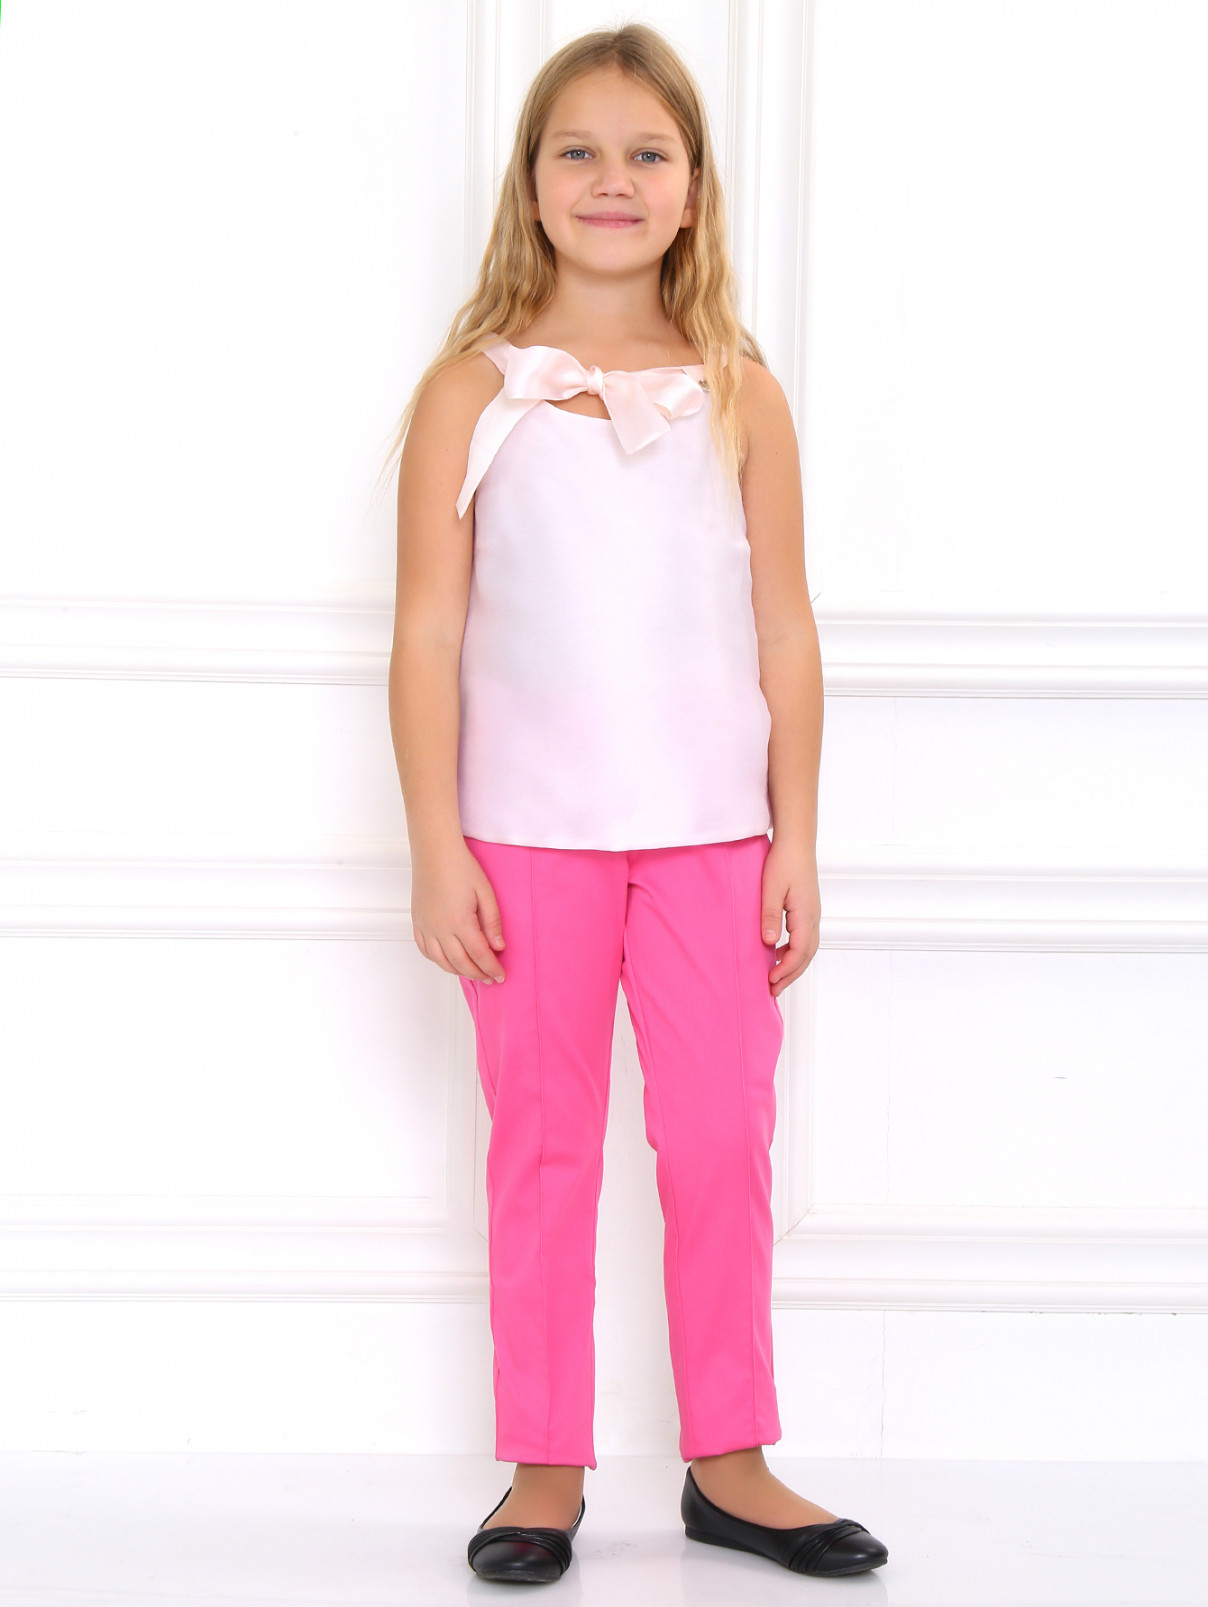 Классические брюки со стрелками I Pinco Pallino  –  Модель Общий вид  – Цвет:  Розовый